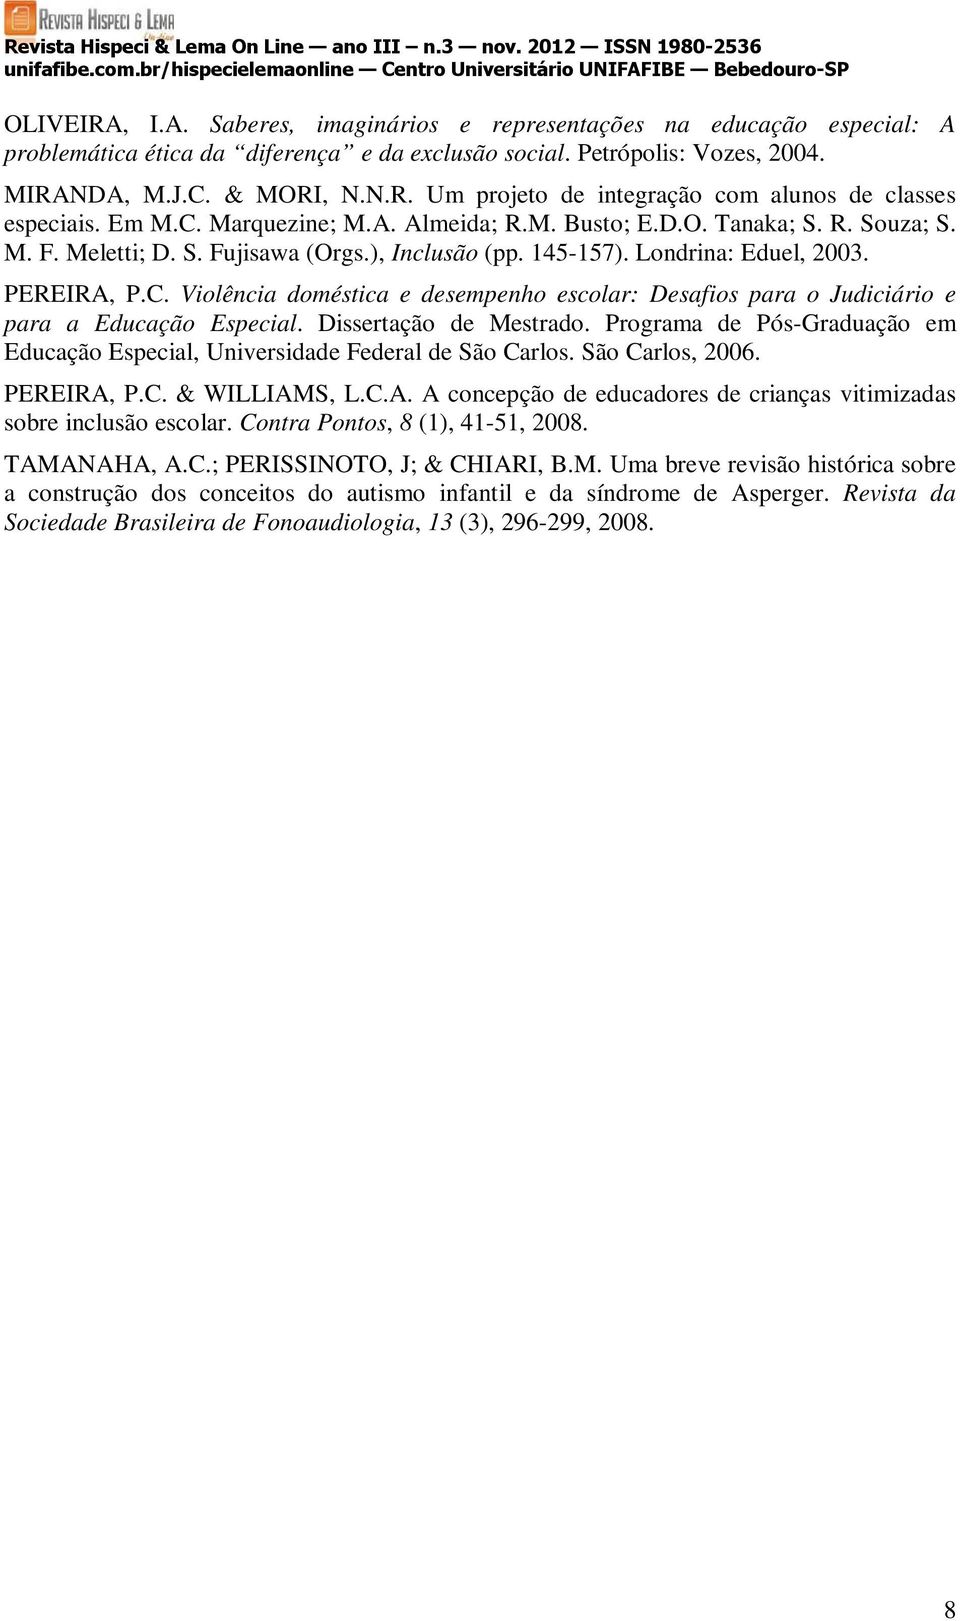 Dissertação de Mestrado. Programa de Pós-Graduação em Educação Especial, Universidade Federal de São Carlos. São Carlos, 2006. PEREIRA,